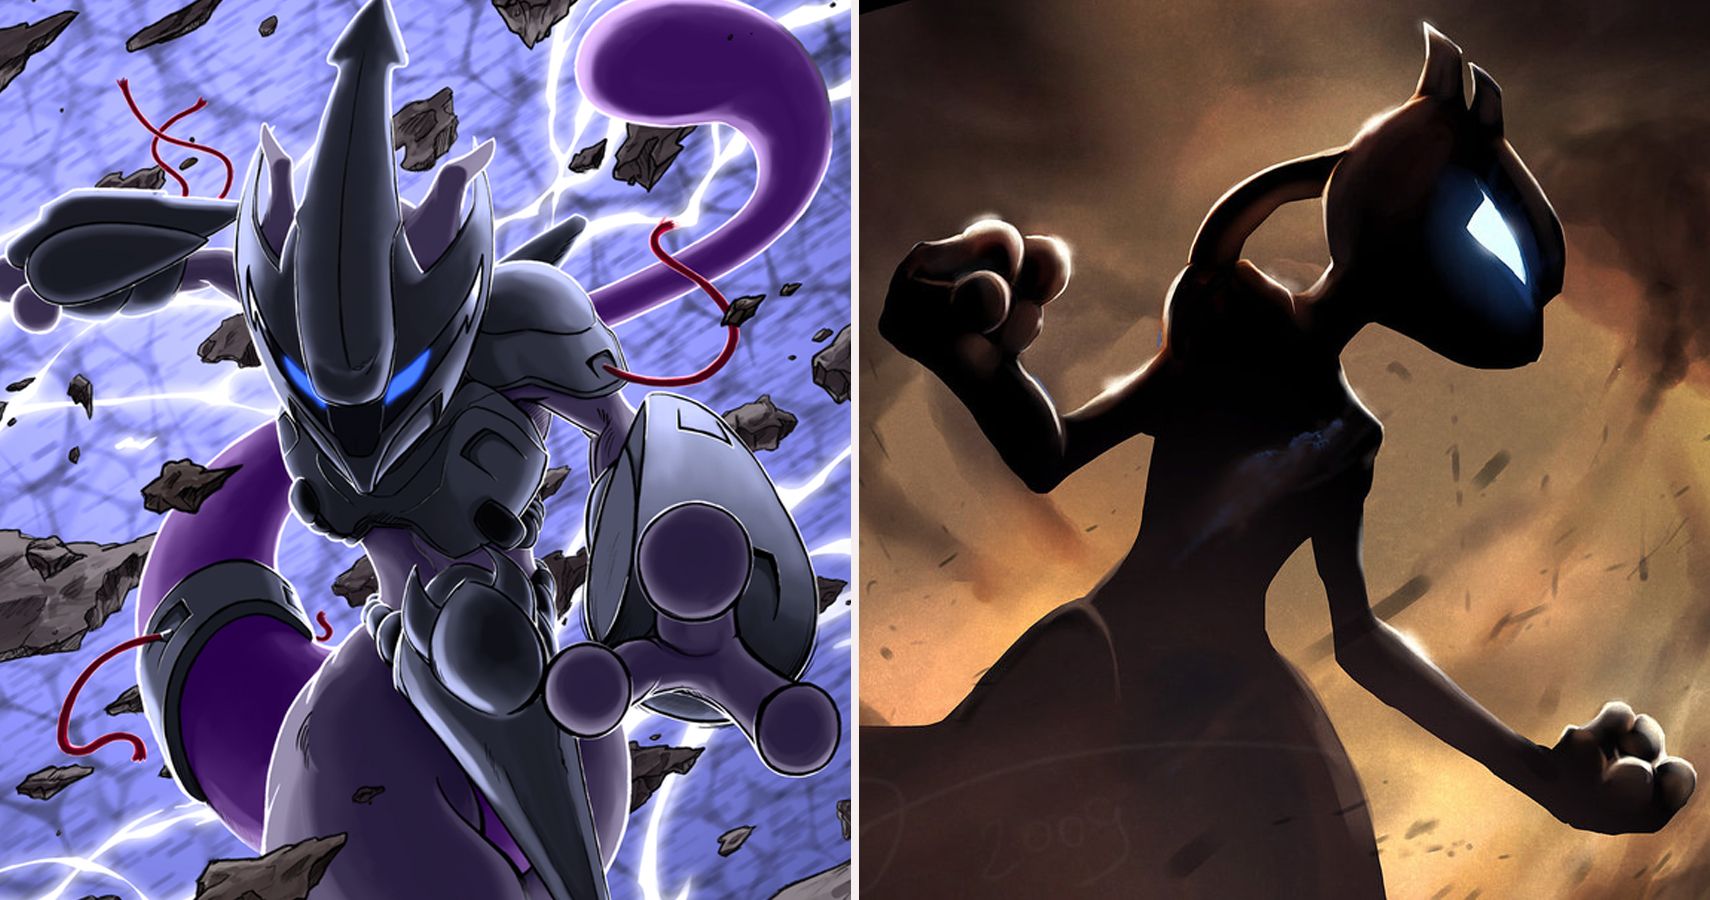 Como é possível existirem dois Mewtwos diferentes? – Pokémon Mythology